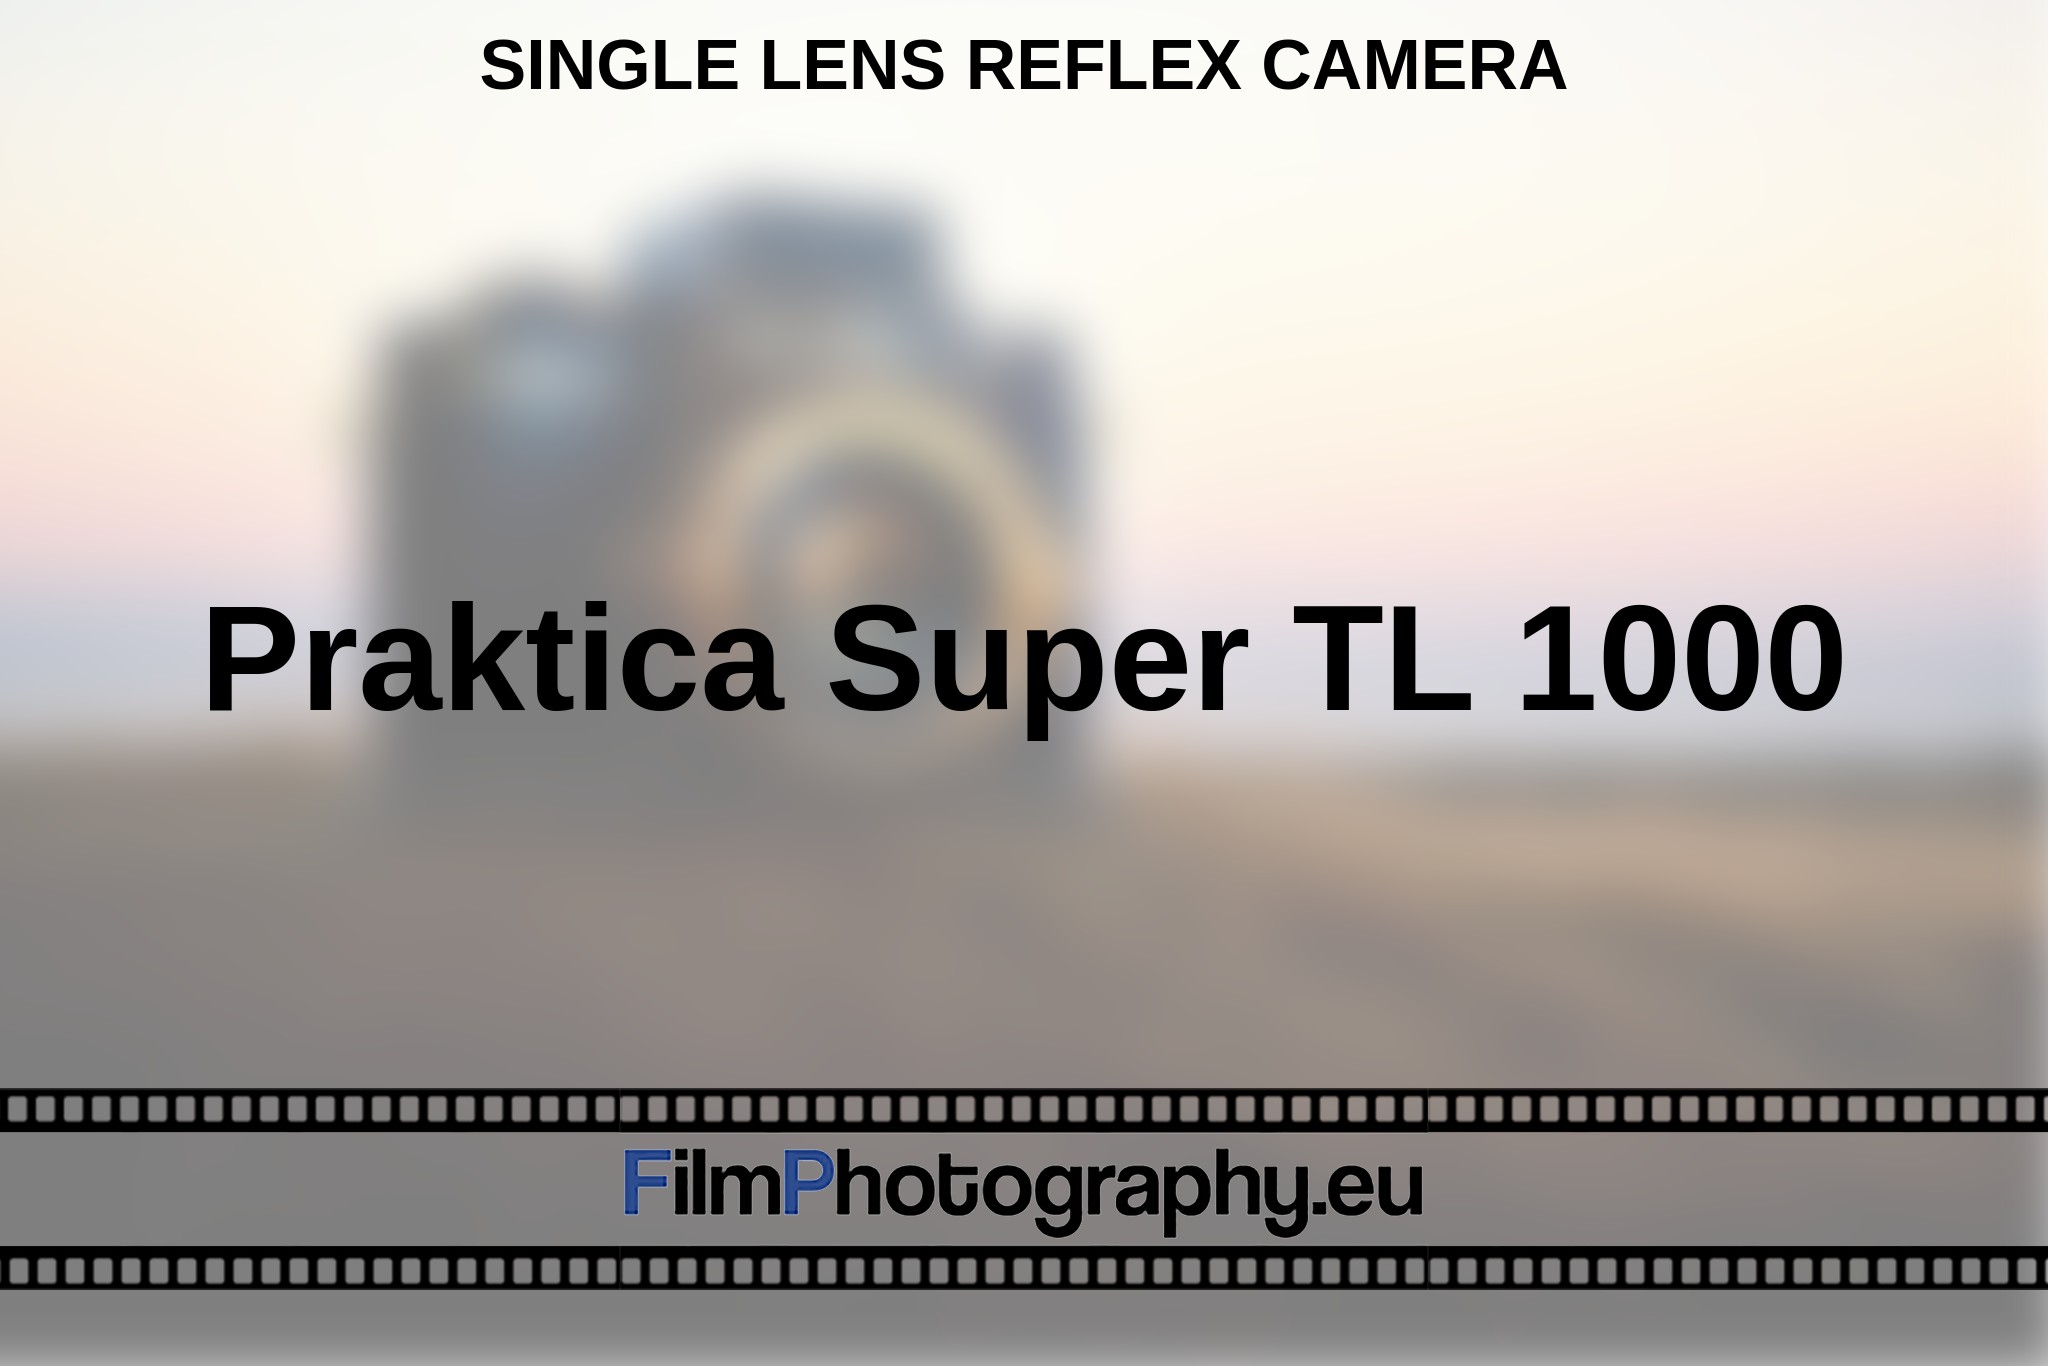 praktica-super-tl-1000-single-lens-reflex-camera-bnv.jpg